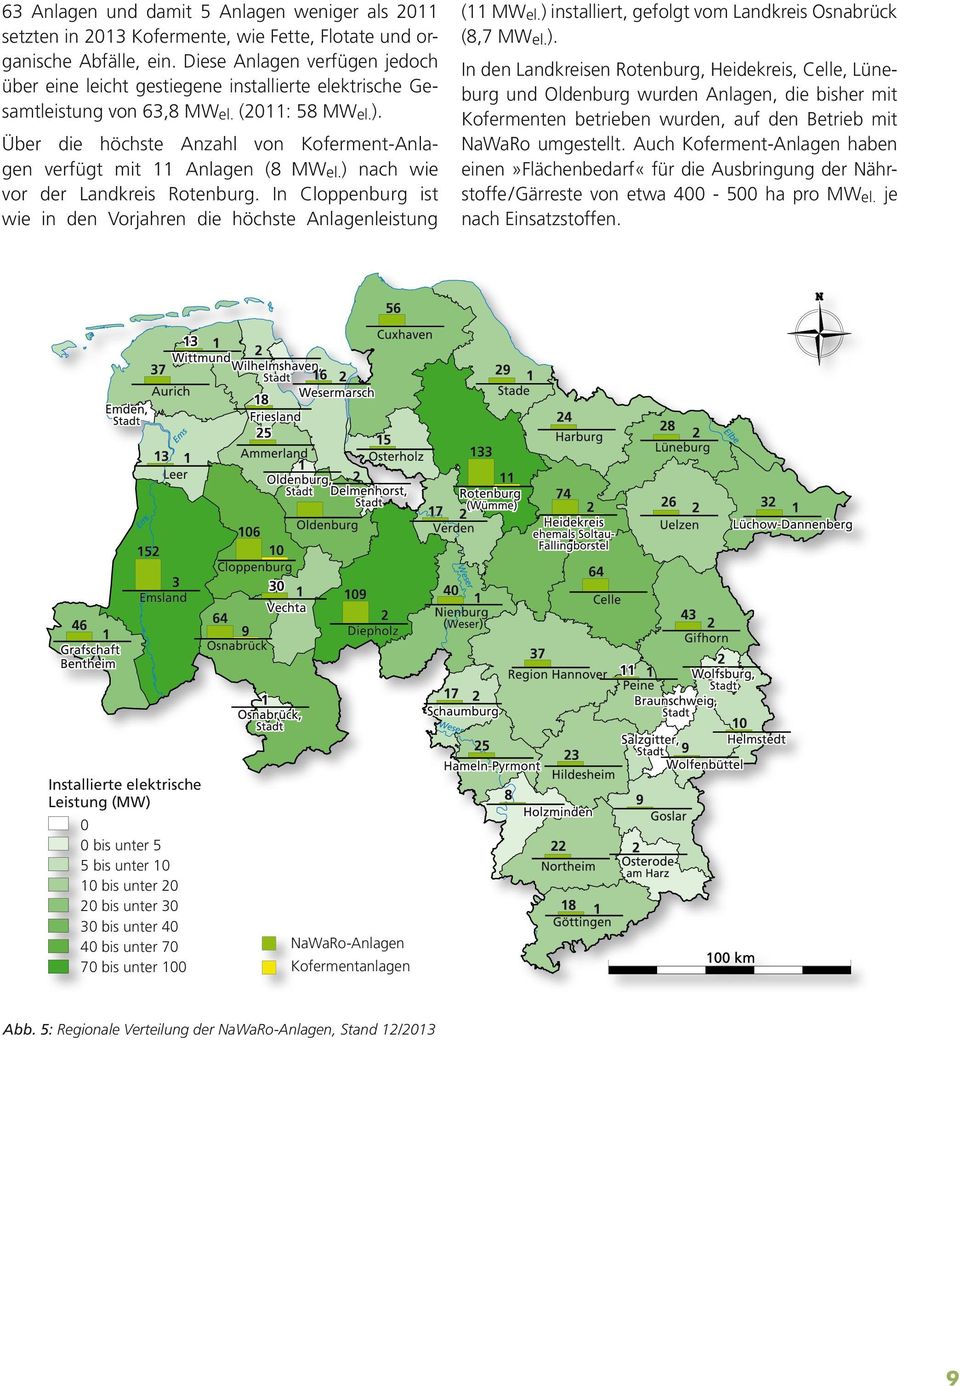 Über die höchste Anzahl von Koferment-Anlagen verfügt mit 11 Anlagen (8 MWel.) nach wie vor der Landkreis Rotenburg. In Cloppenburg ist wie in den Vorjahren die höchste Anlagenleistung (11 MWel.